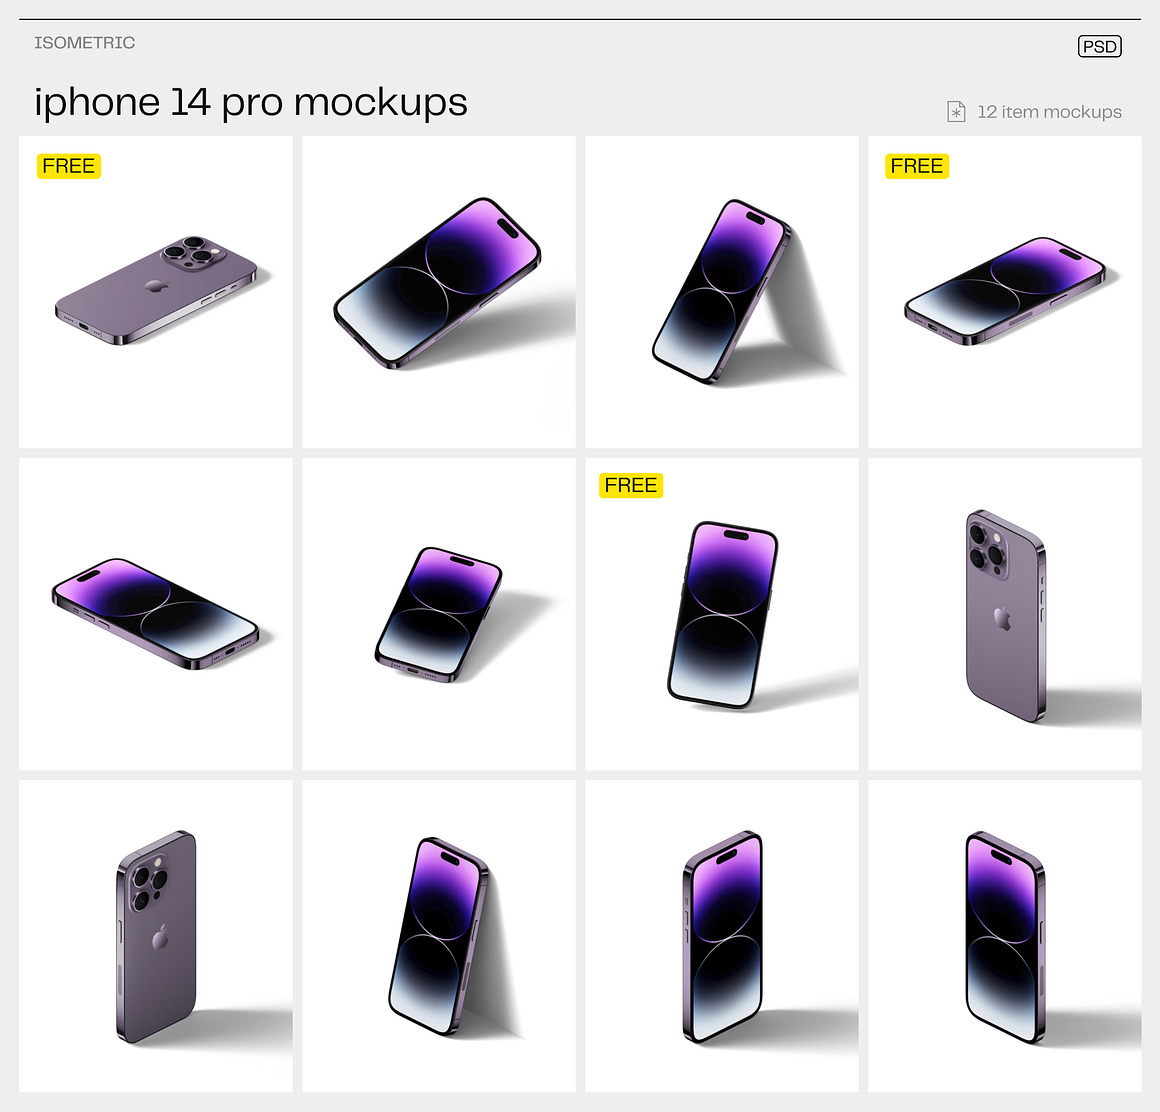 工业风极简质感高级Phone14 pro苹果手机App界面UI设计作品贴图展示PSD暗黑场景样机套装 iPhone 14 pro mockups , 第11张